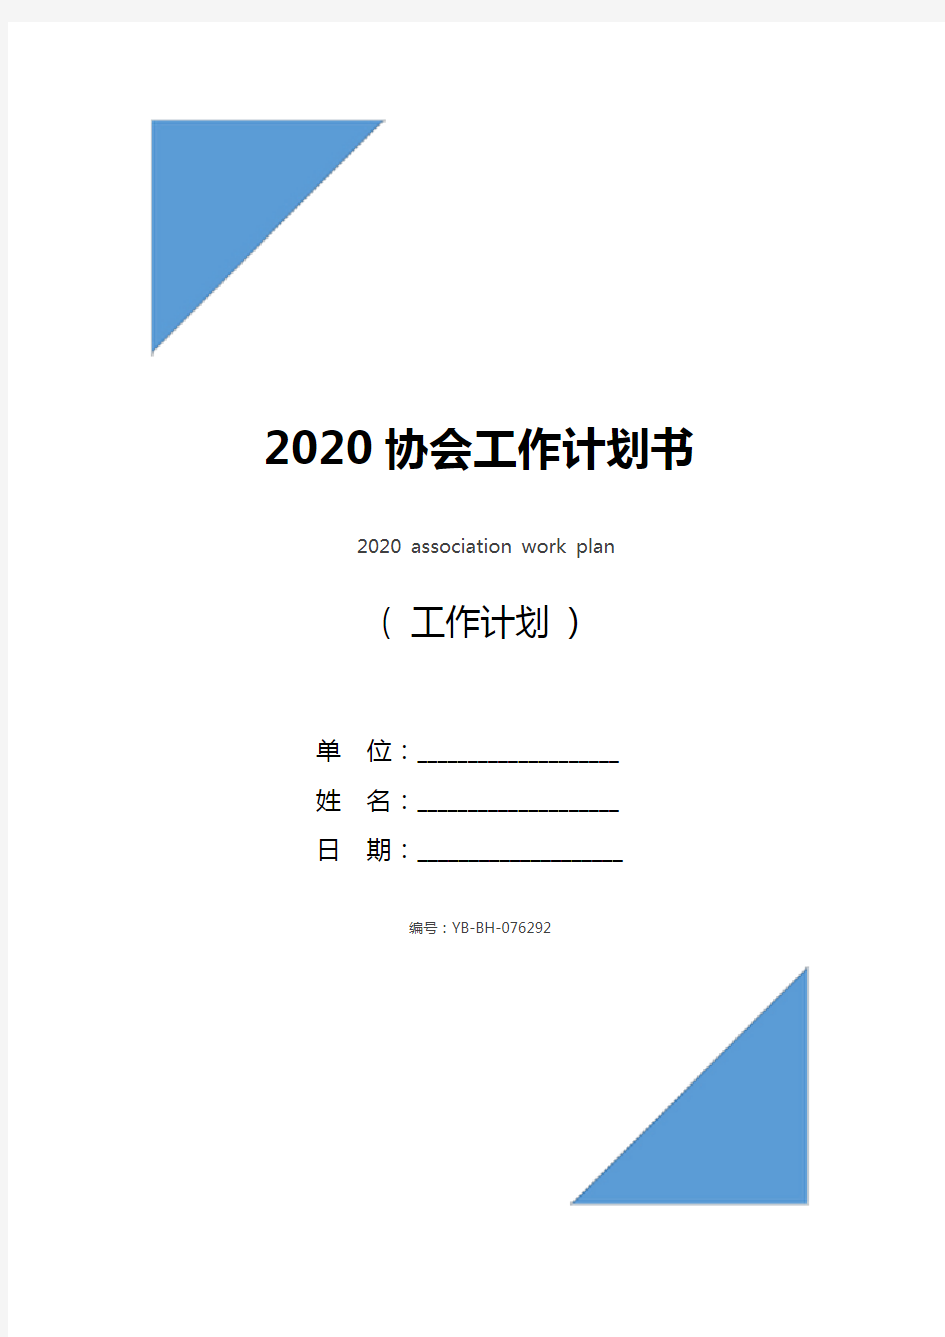 2020协会工作计划书